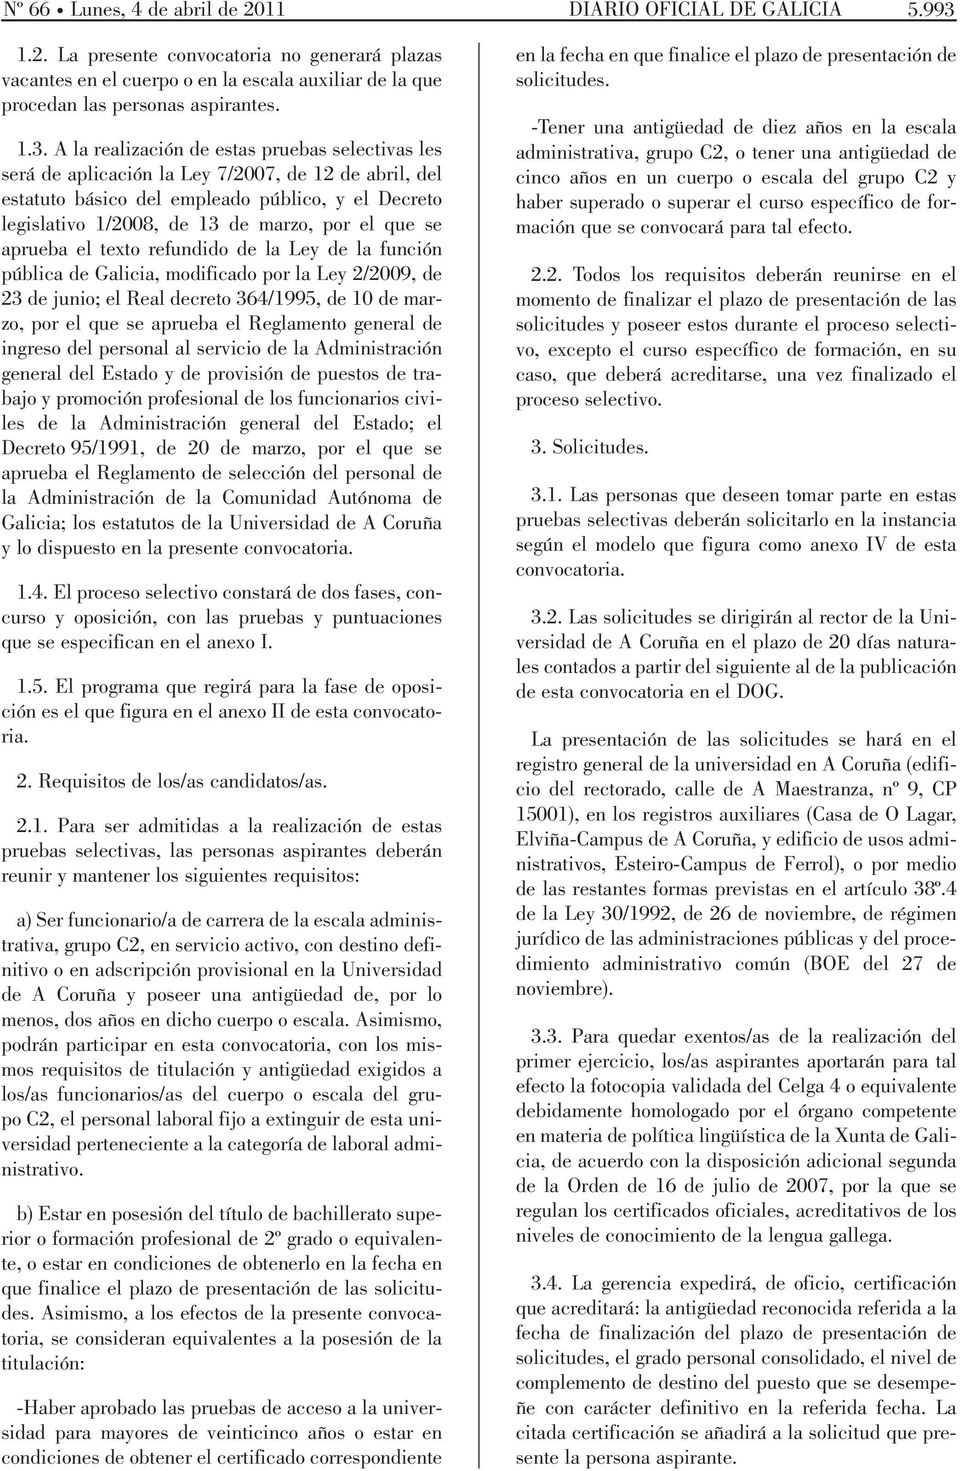 el que se aprueba el texto refundido de la Ley de la función pública de Galicia, modificado por la Ley 2/2009, de 23 de junio; el Real decreto 364/1995, de 10 de marzo, por el que se aprueba el